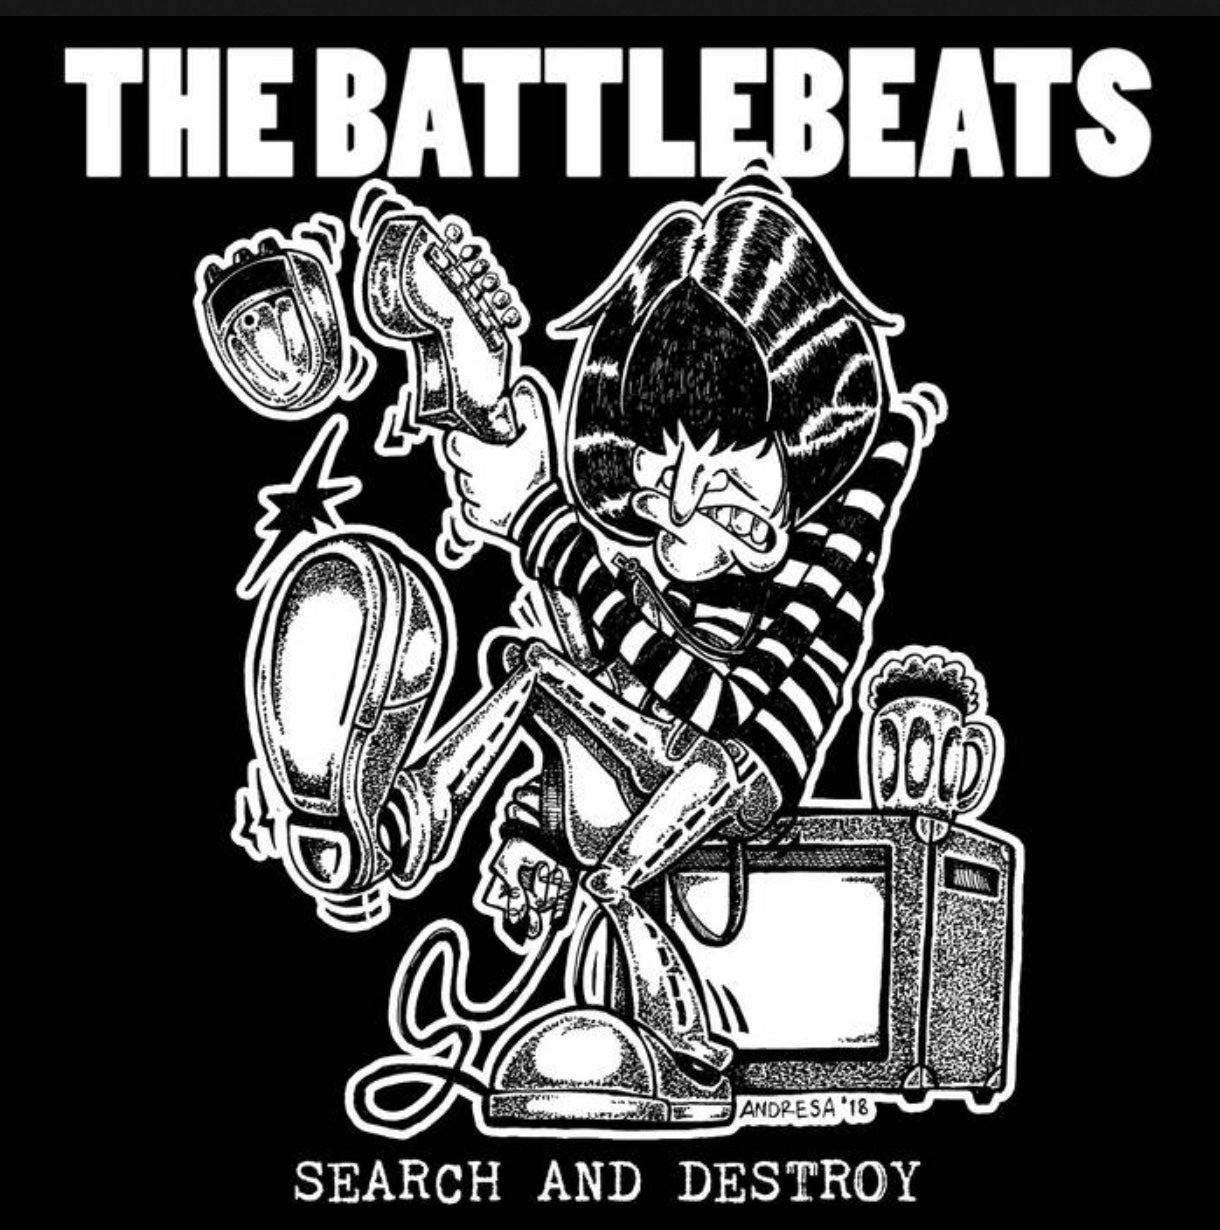 OMRDST-010 The Battlebeats “Search & Destroy” 12” vinyl LP